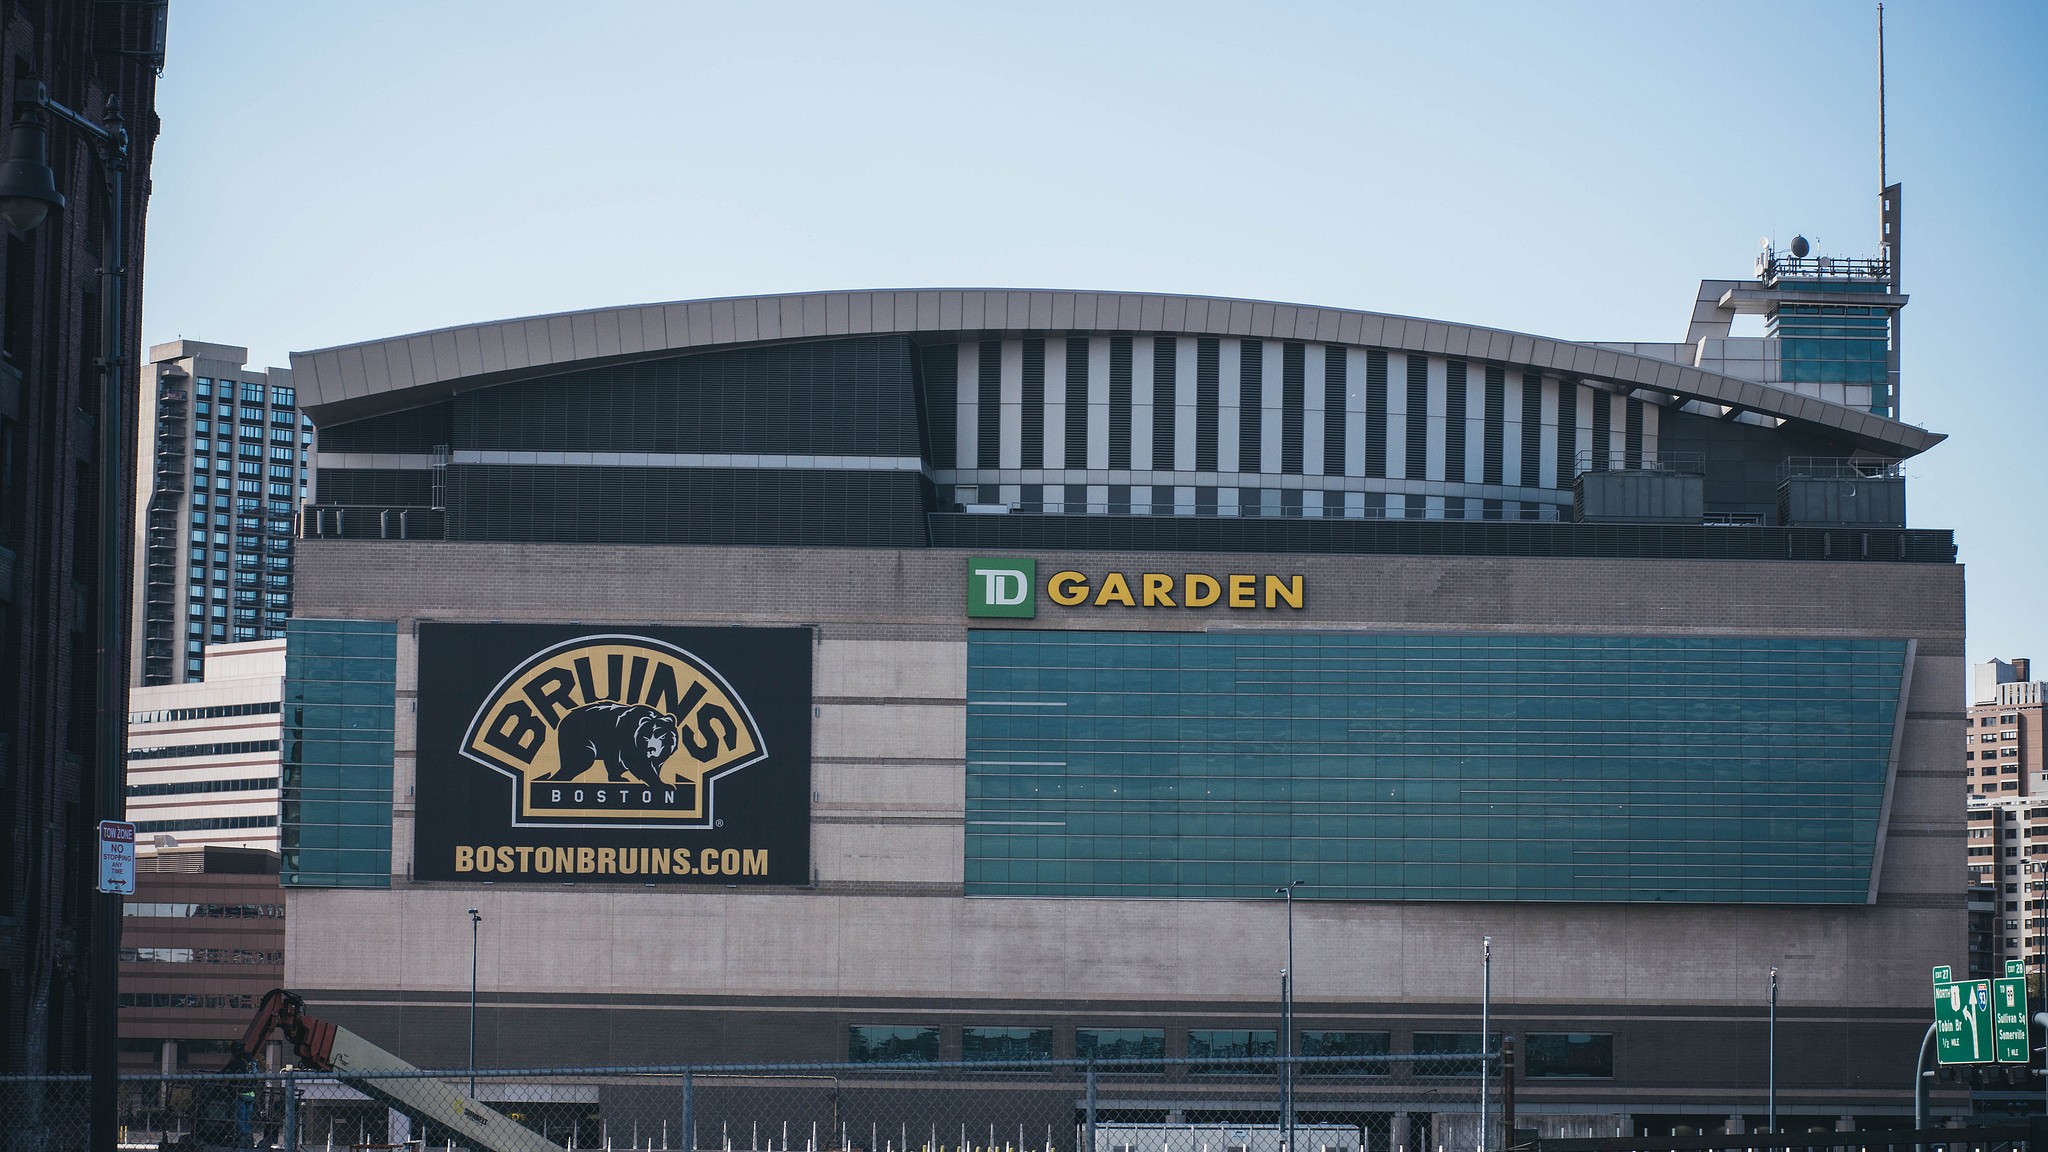 TD Garden  Boston Sports and Entertainment Arena